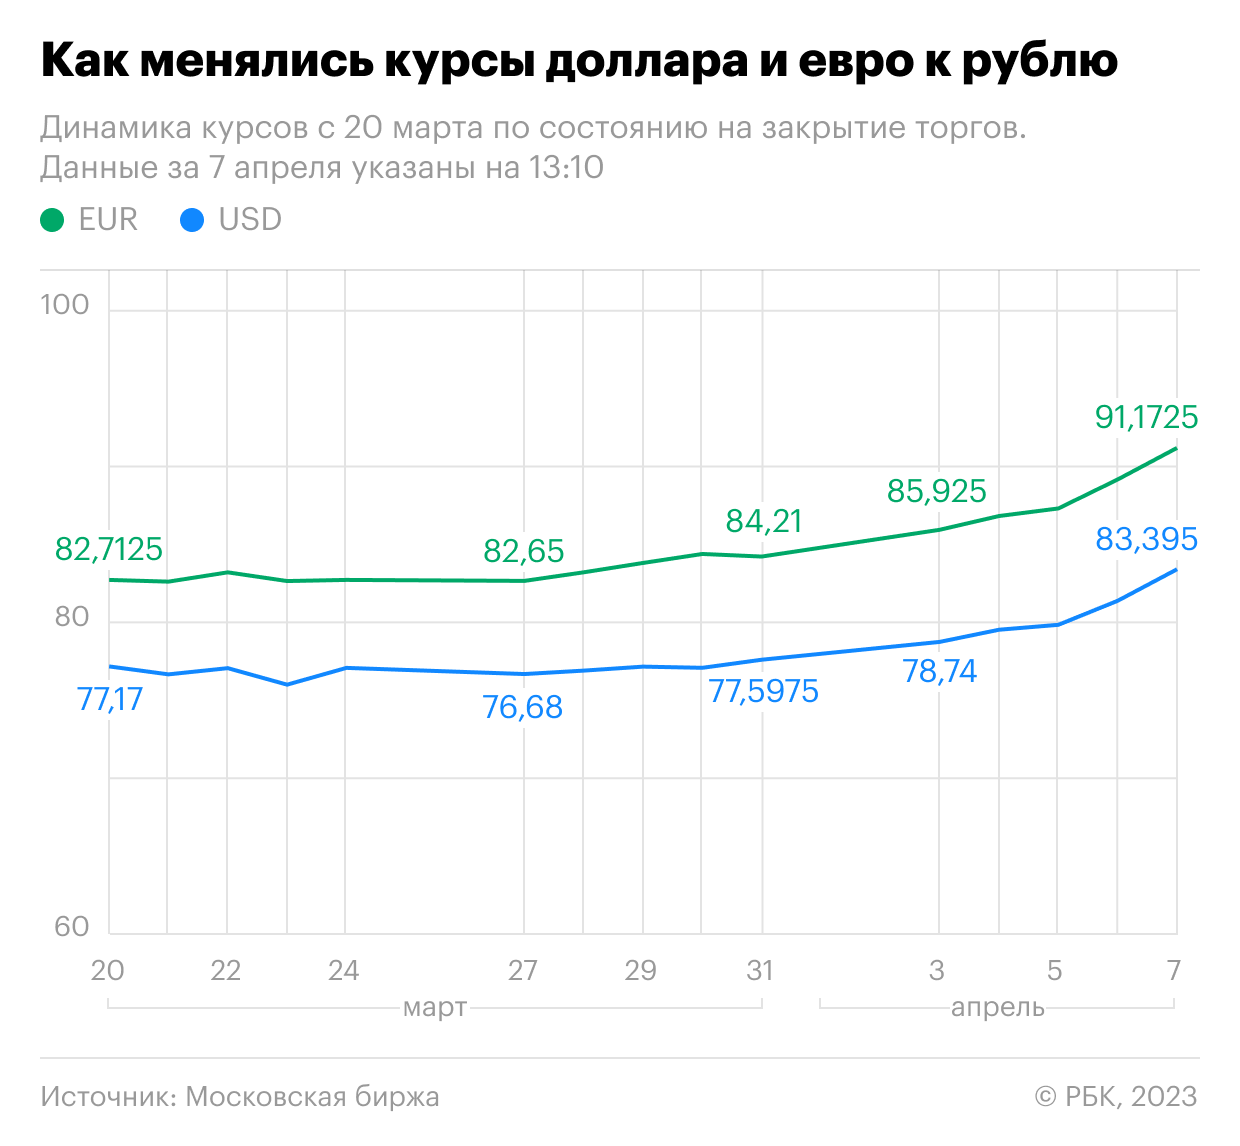 Как менялся курс доллара и евро к рублю. Инфографика